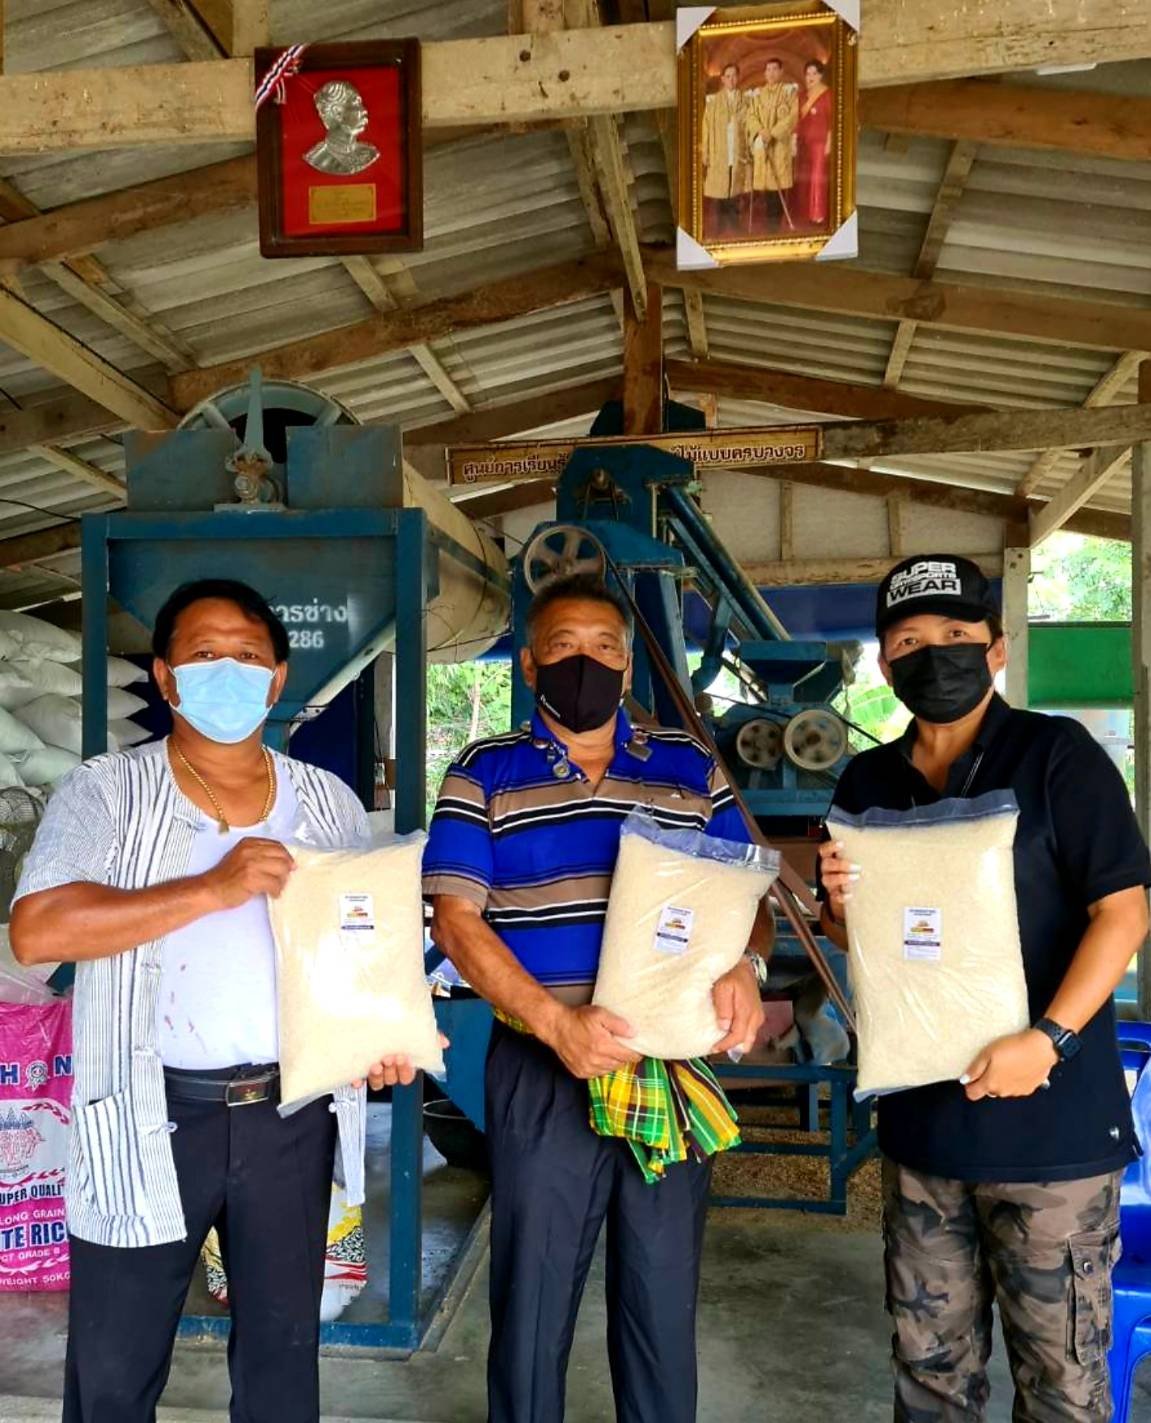 สมาคมชาวนาและเกษตรกรไทย และรายการคืนคุณให้แผ่นดินร่วมกันสู้ภัยโควิด-19 นำข้าวแจกจ่ายพี่น้องแนวชายแดน-ถิ่นกันดาร